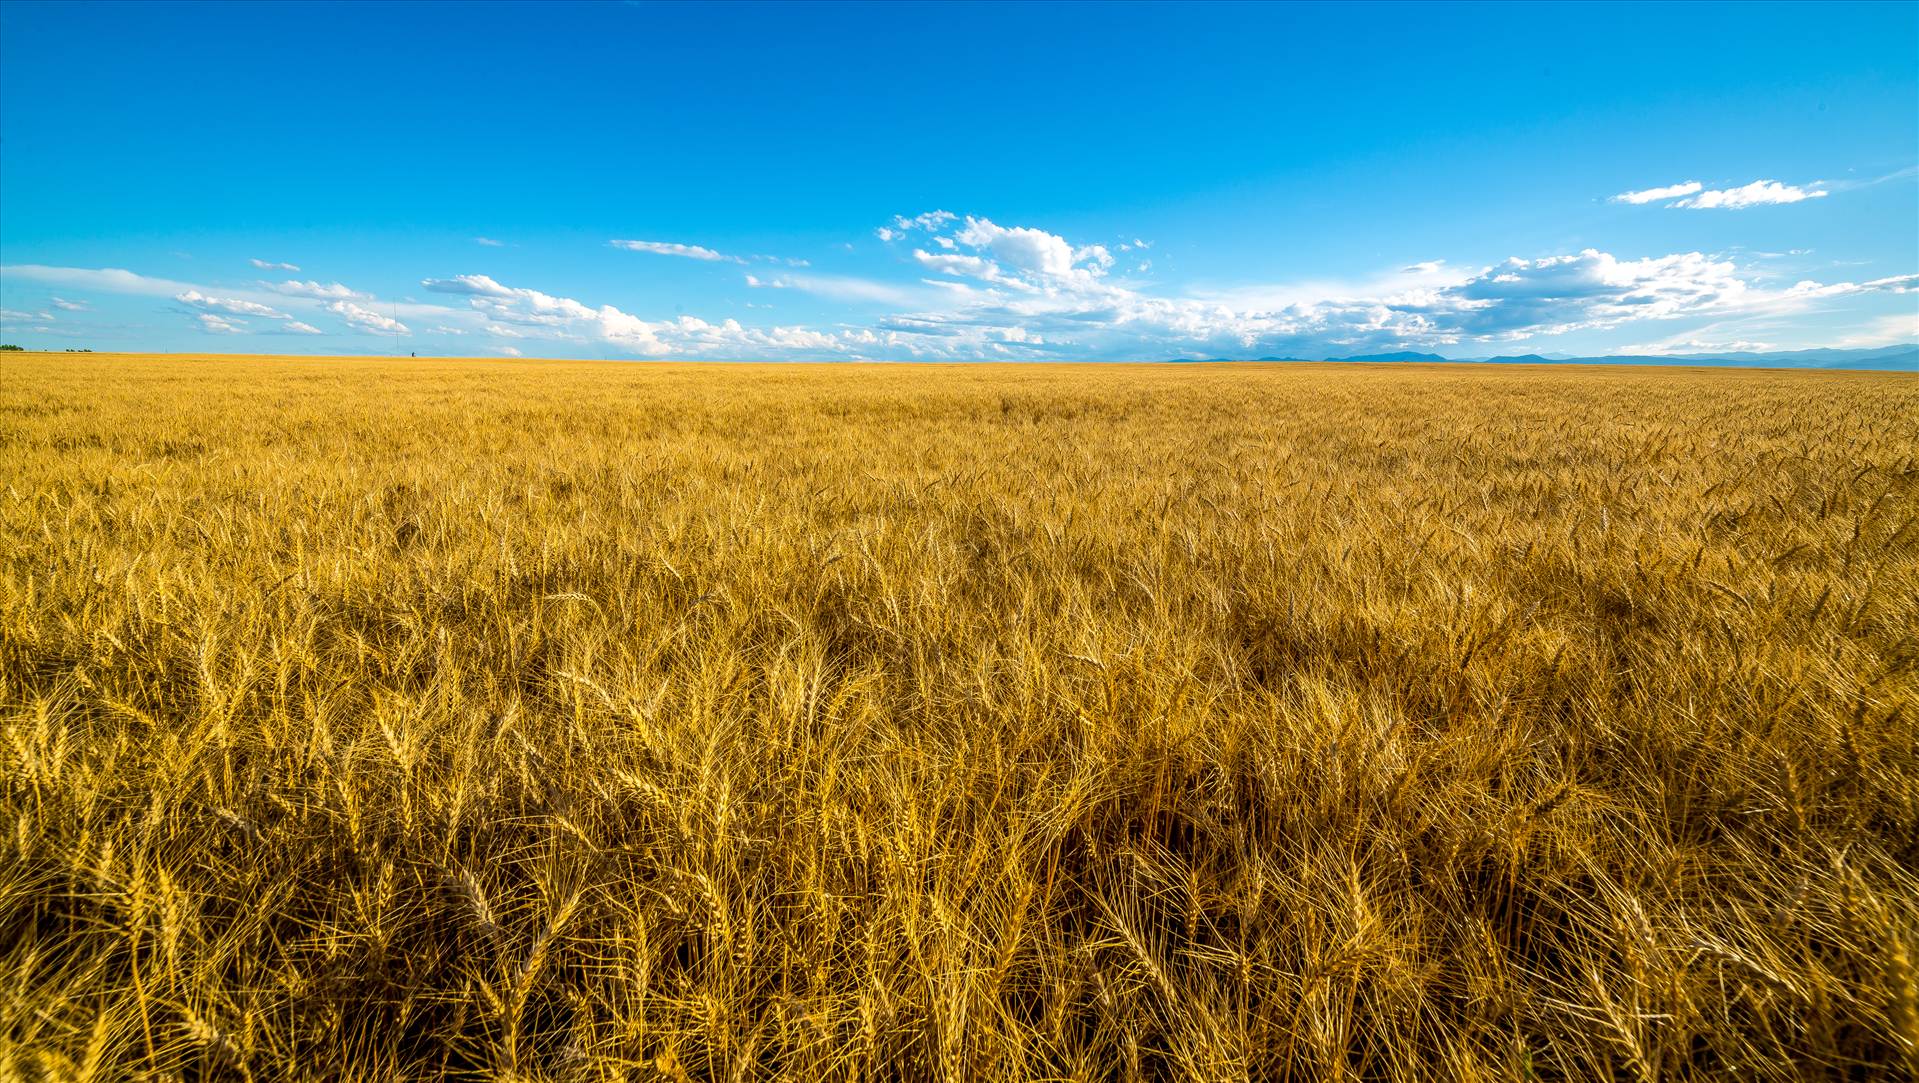 Summer Fields I - Wheat fields near Longmont, Colorado by Scott Smith Photos